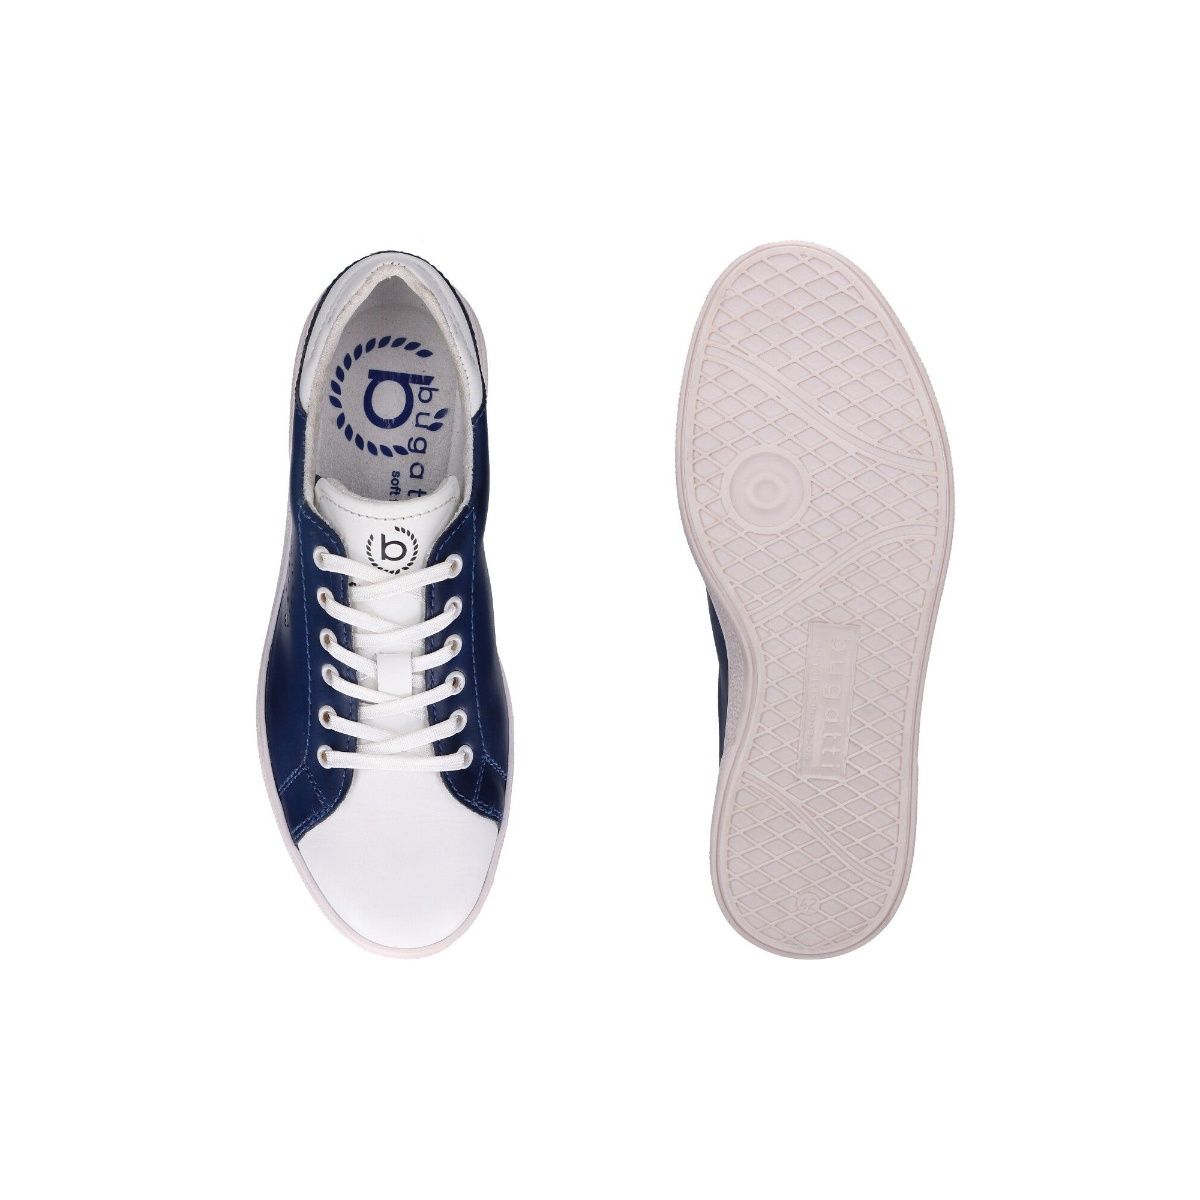 REFOAM Men's Navy Blue Textile Slip On Sports Shoes – Refoam